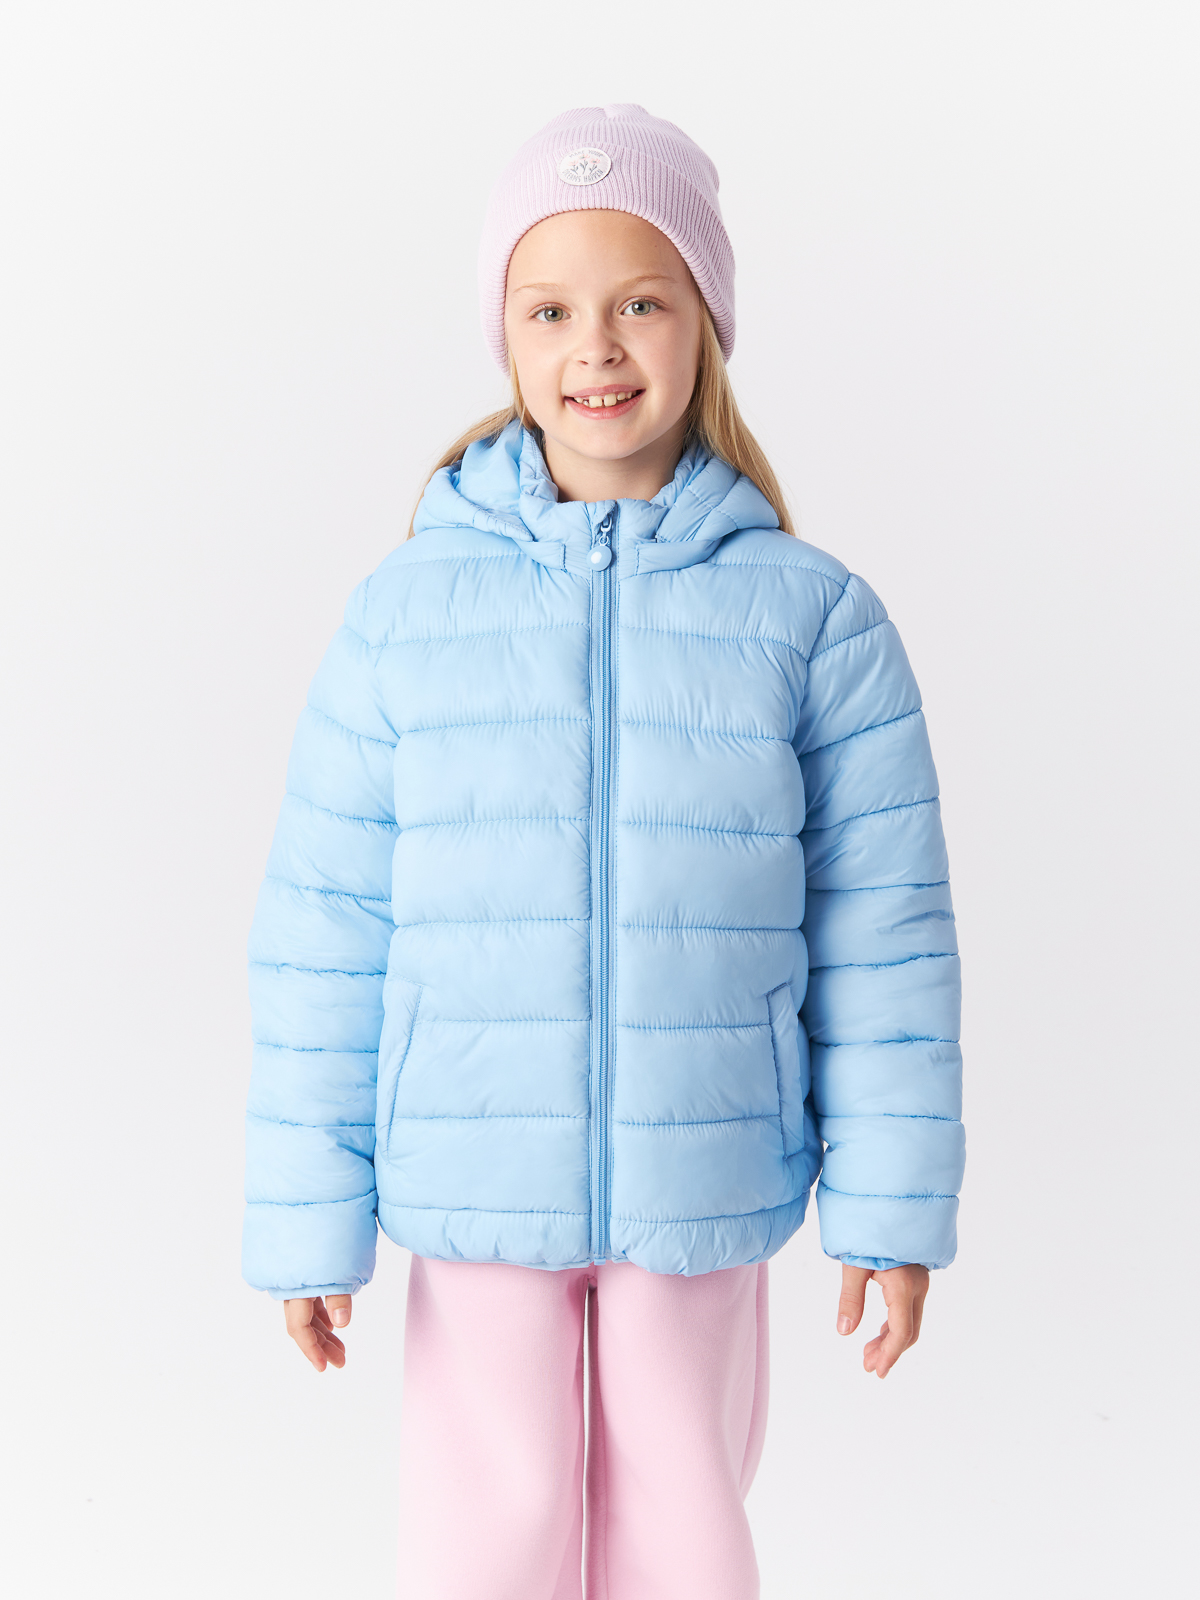 Куртка Mcstyles для девочки, размер 158, SMM14, голубая